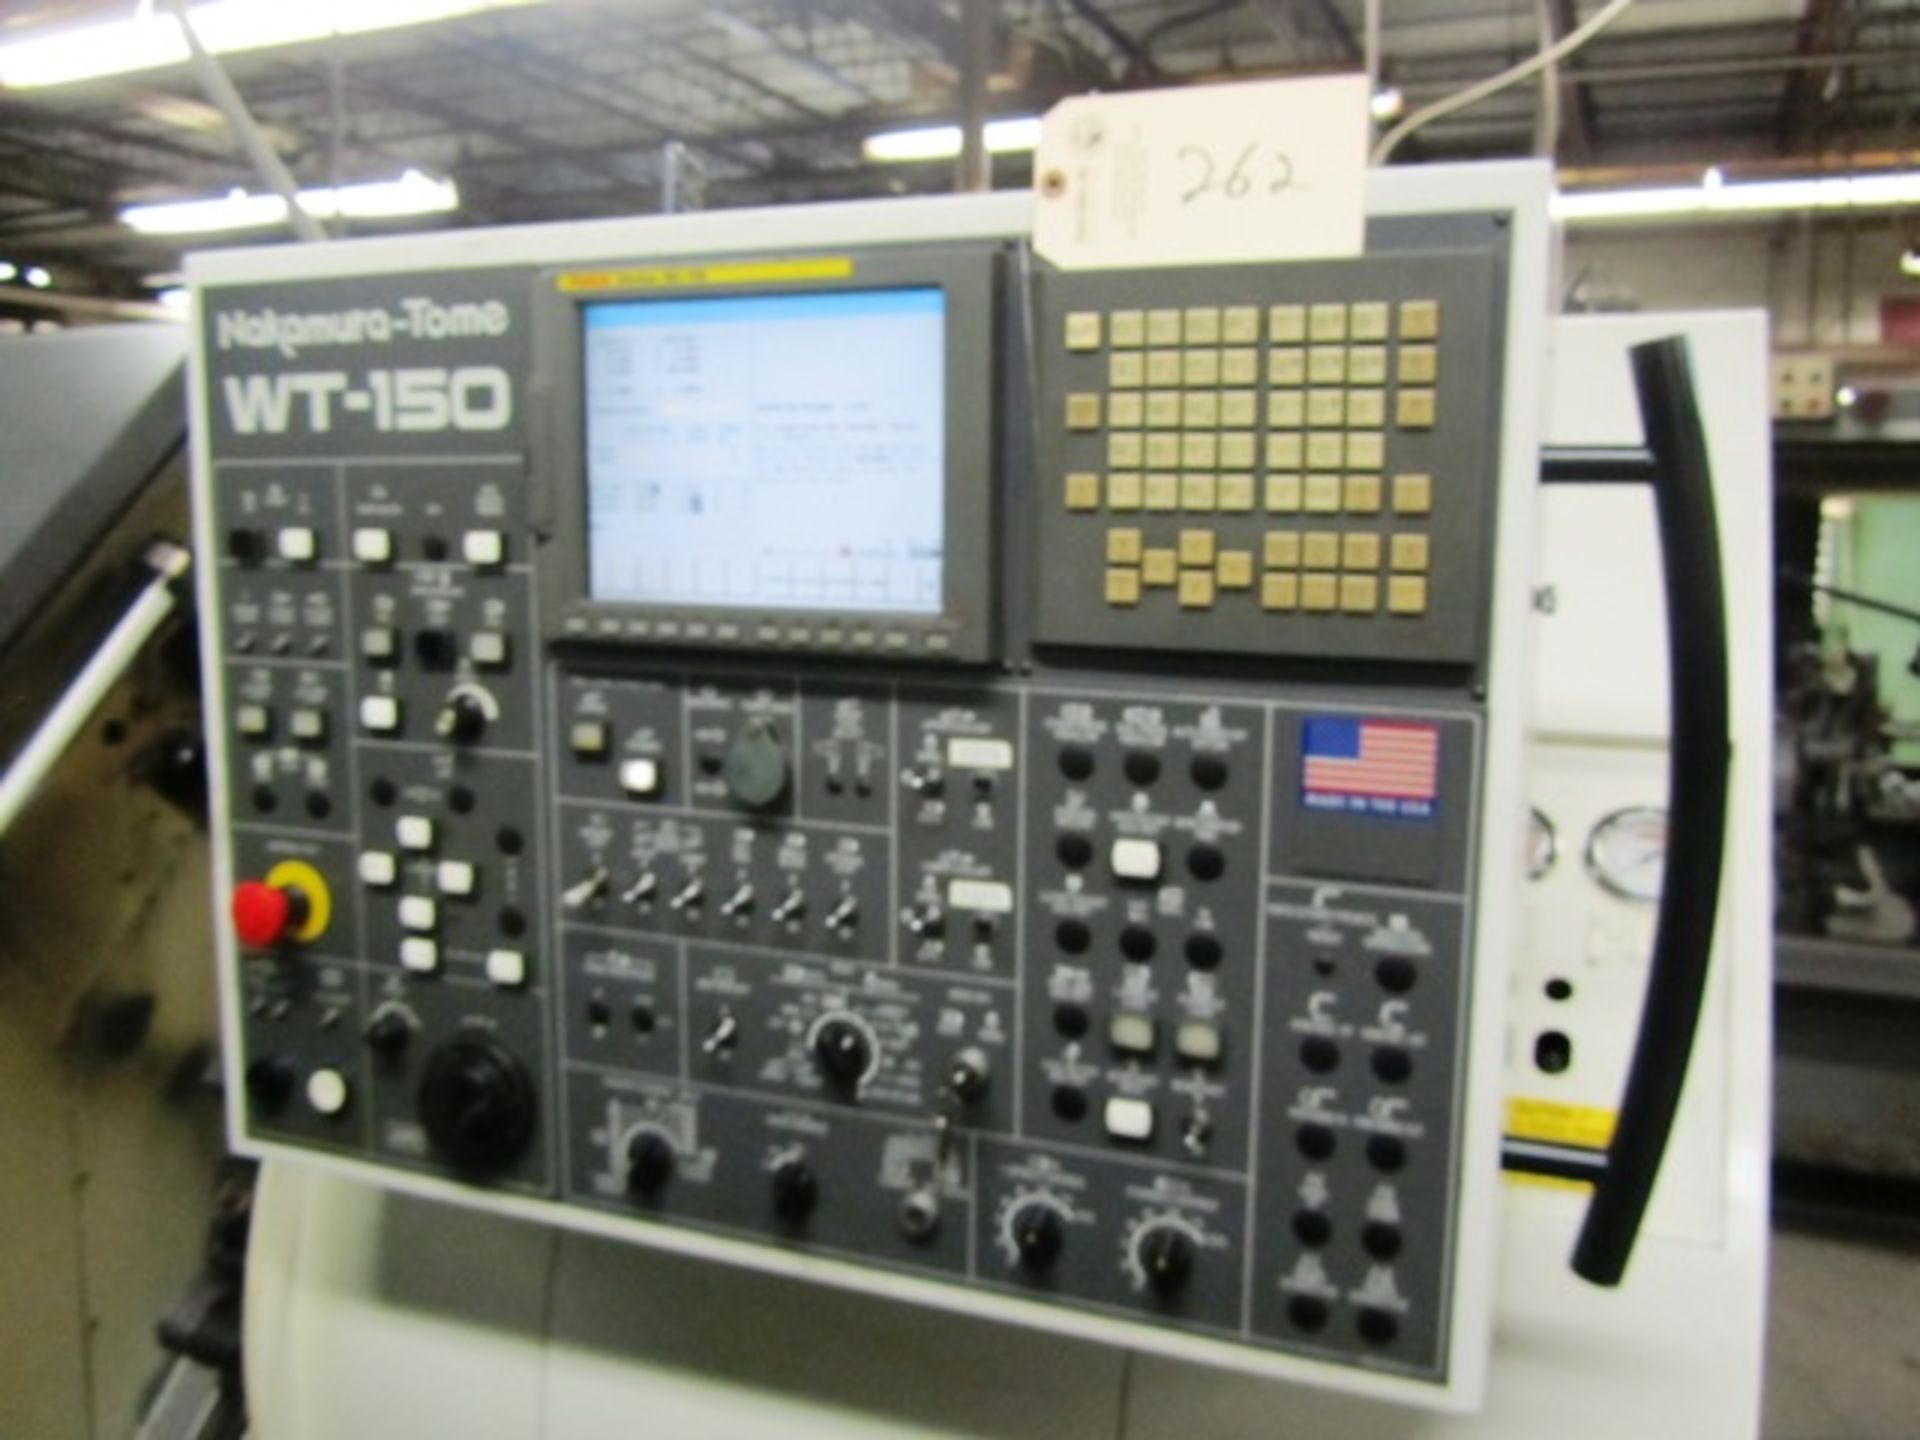 Nakamura-Tome WT-150 CNC Turning Center - Image 2 of 4